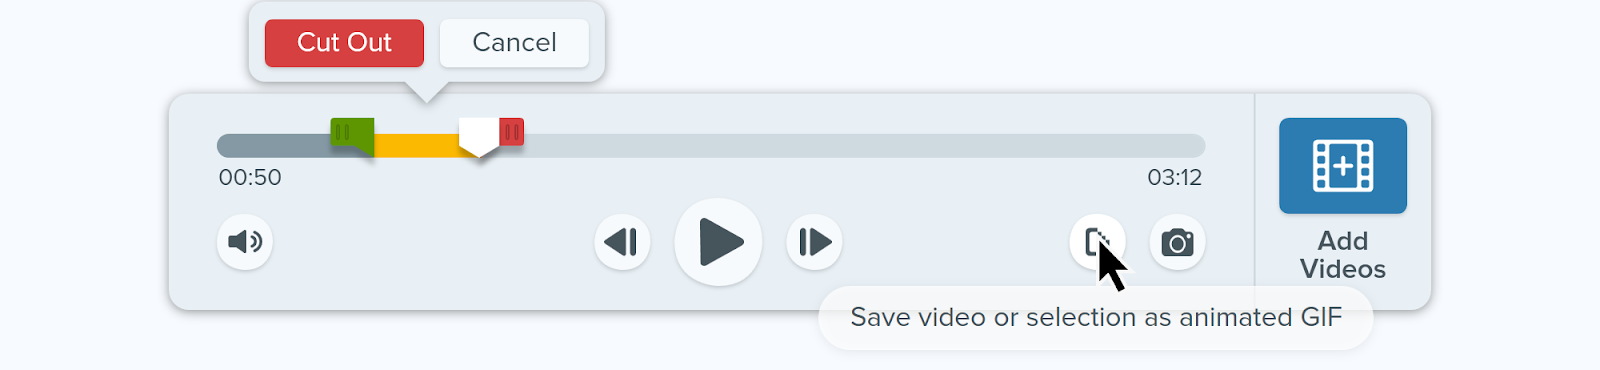 Immagine dell'interfaccia utente di facile utilizzo di Snagit in cui il cursore passa sopra il pulsante "Salva video o selezione come GIF animata".